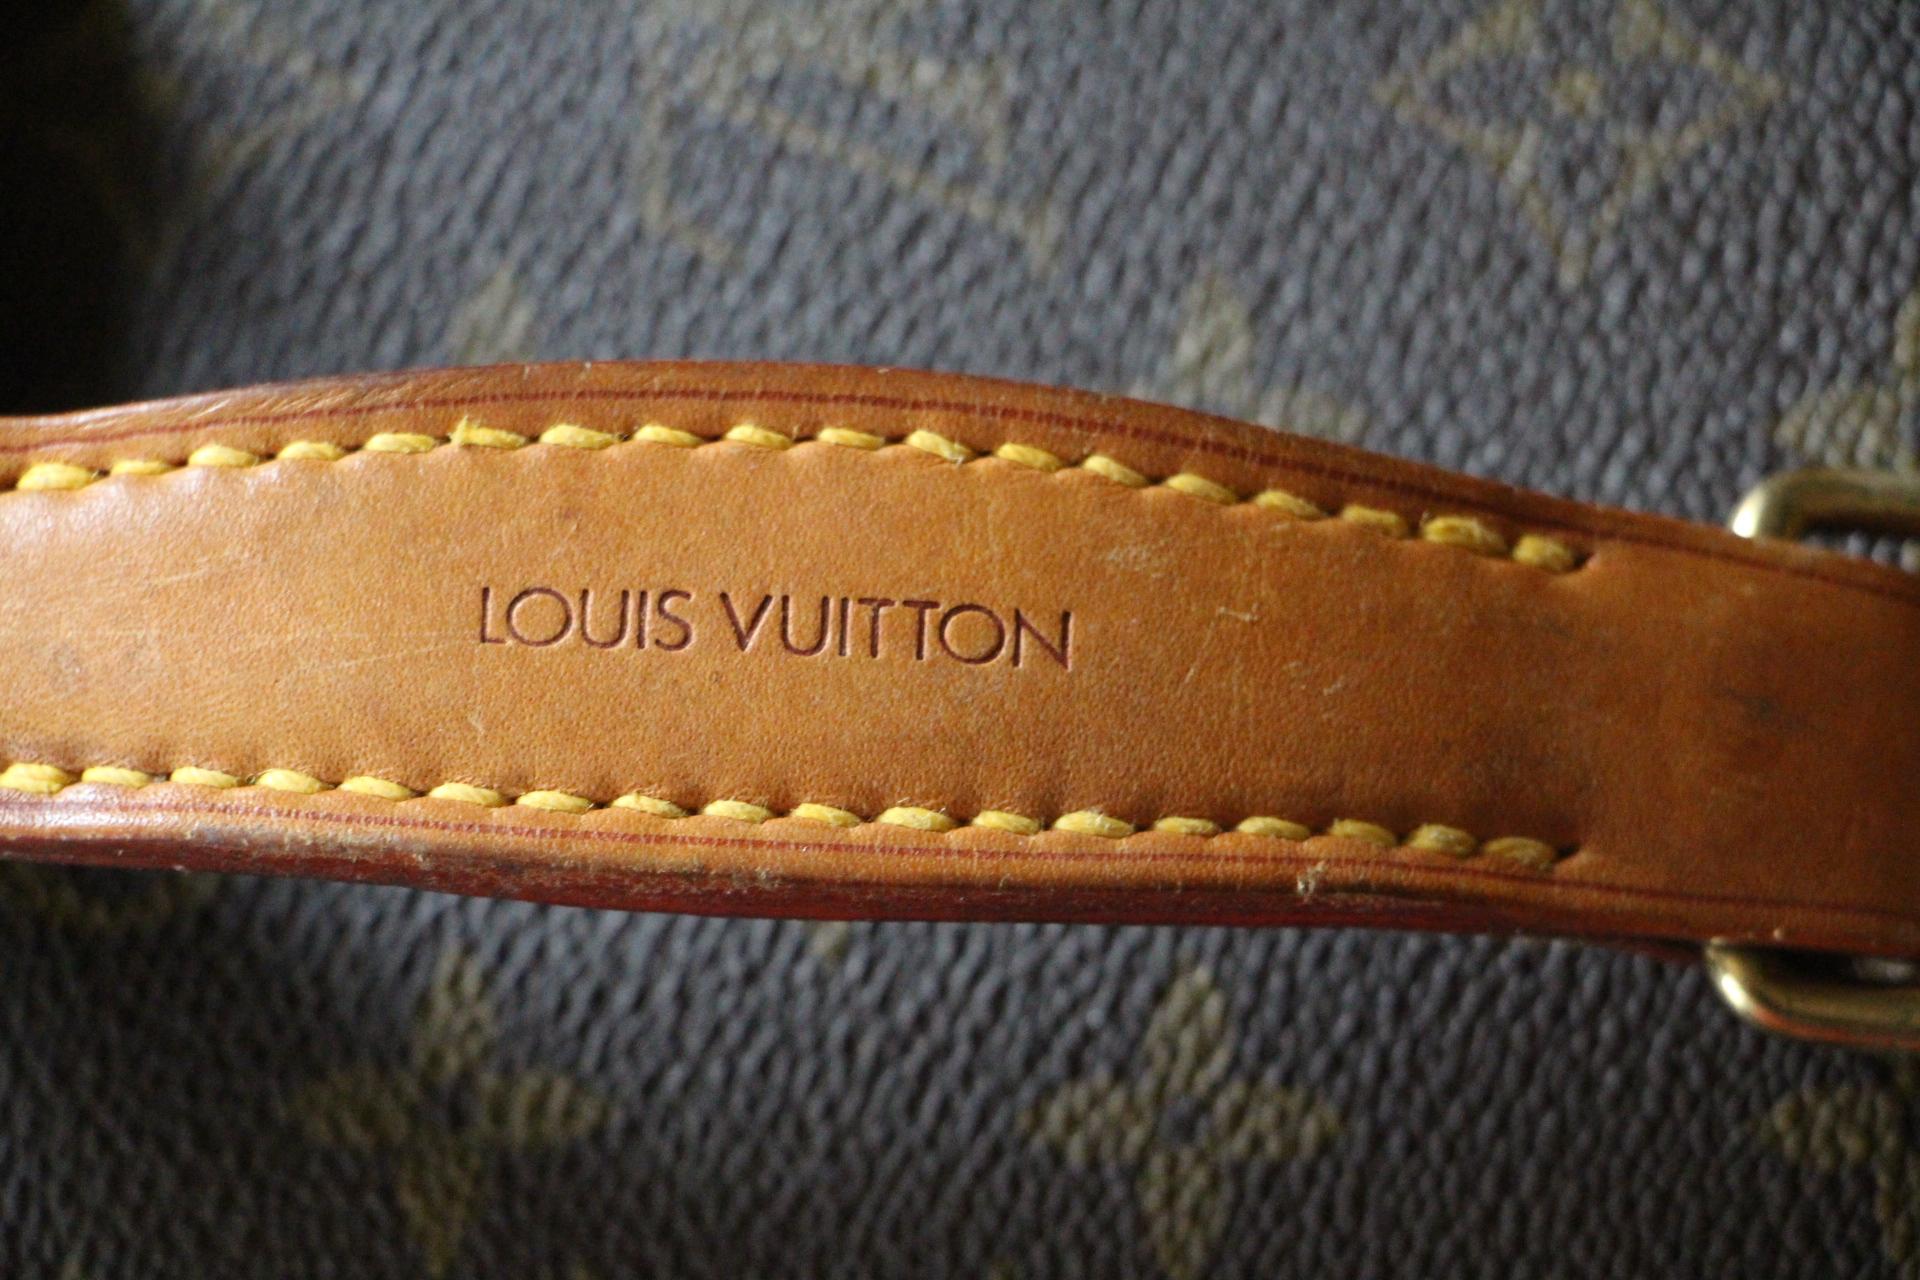 Louis Vuitton Train Case, Louis Vuitton Beauty Case 3